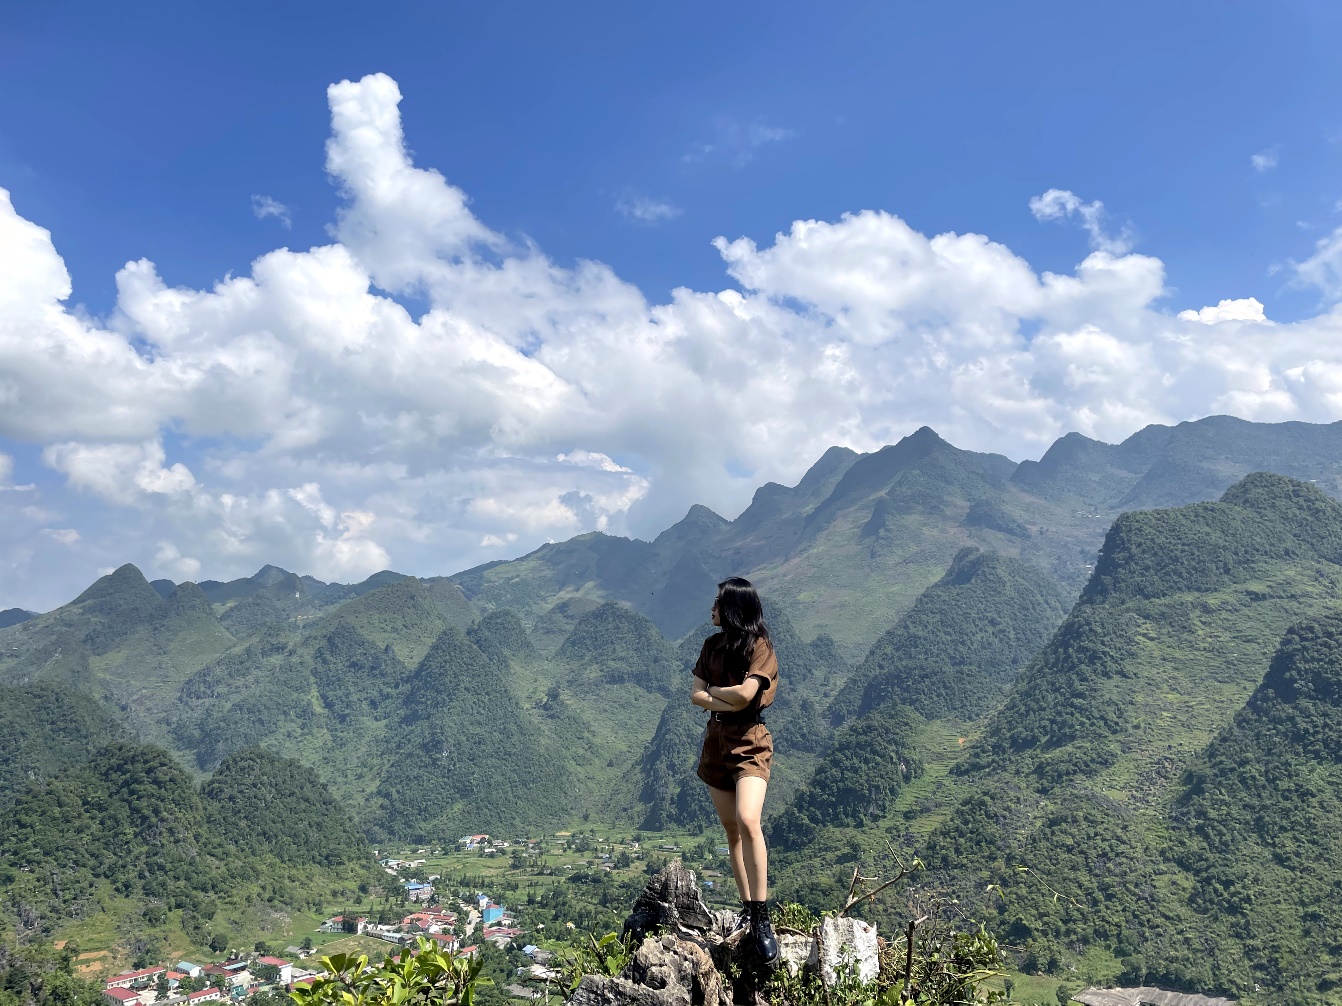 Đứng giữa chốn núi đồi, hít bầu không khí trong lành và nhìn ngắm thiên nhiên Hà Giang - 5